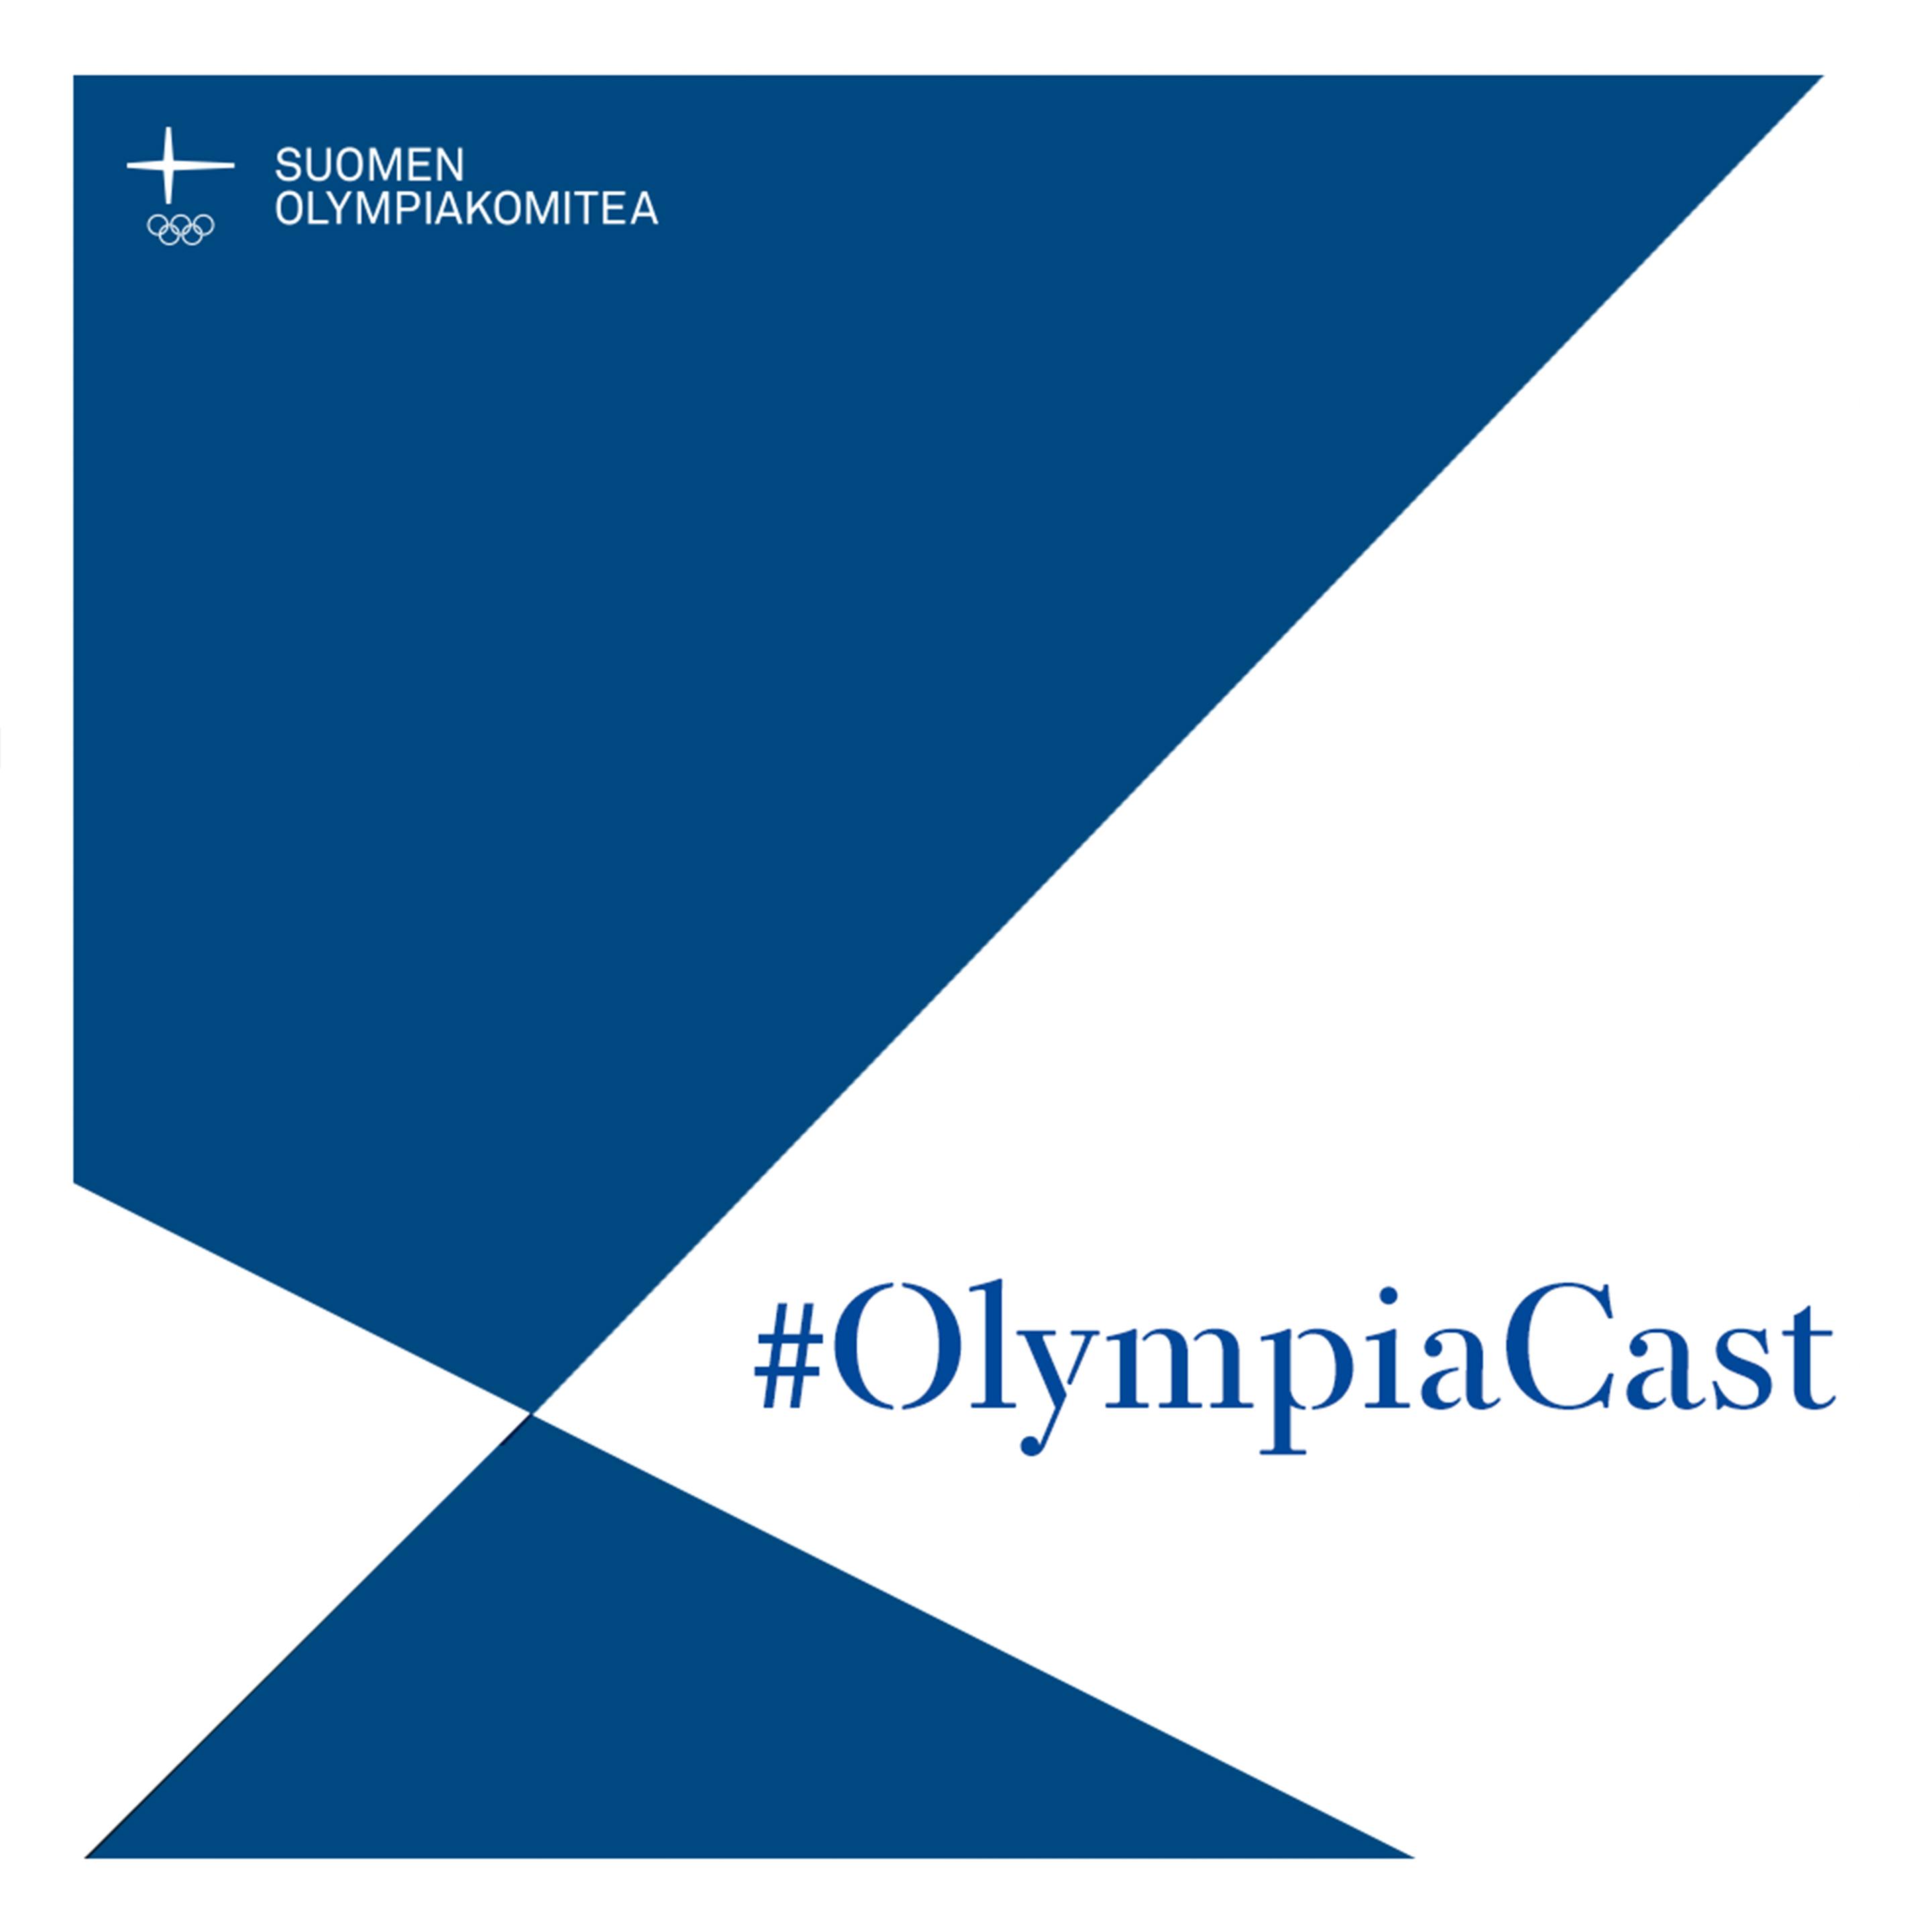 KUNTAVAALIT EXTRA: OlympiaCastin vieraina Mari Holopainen ja Mikko Ollikainen